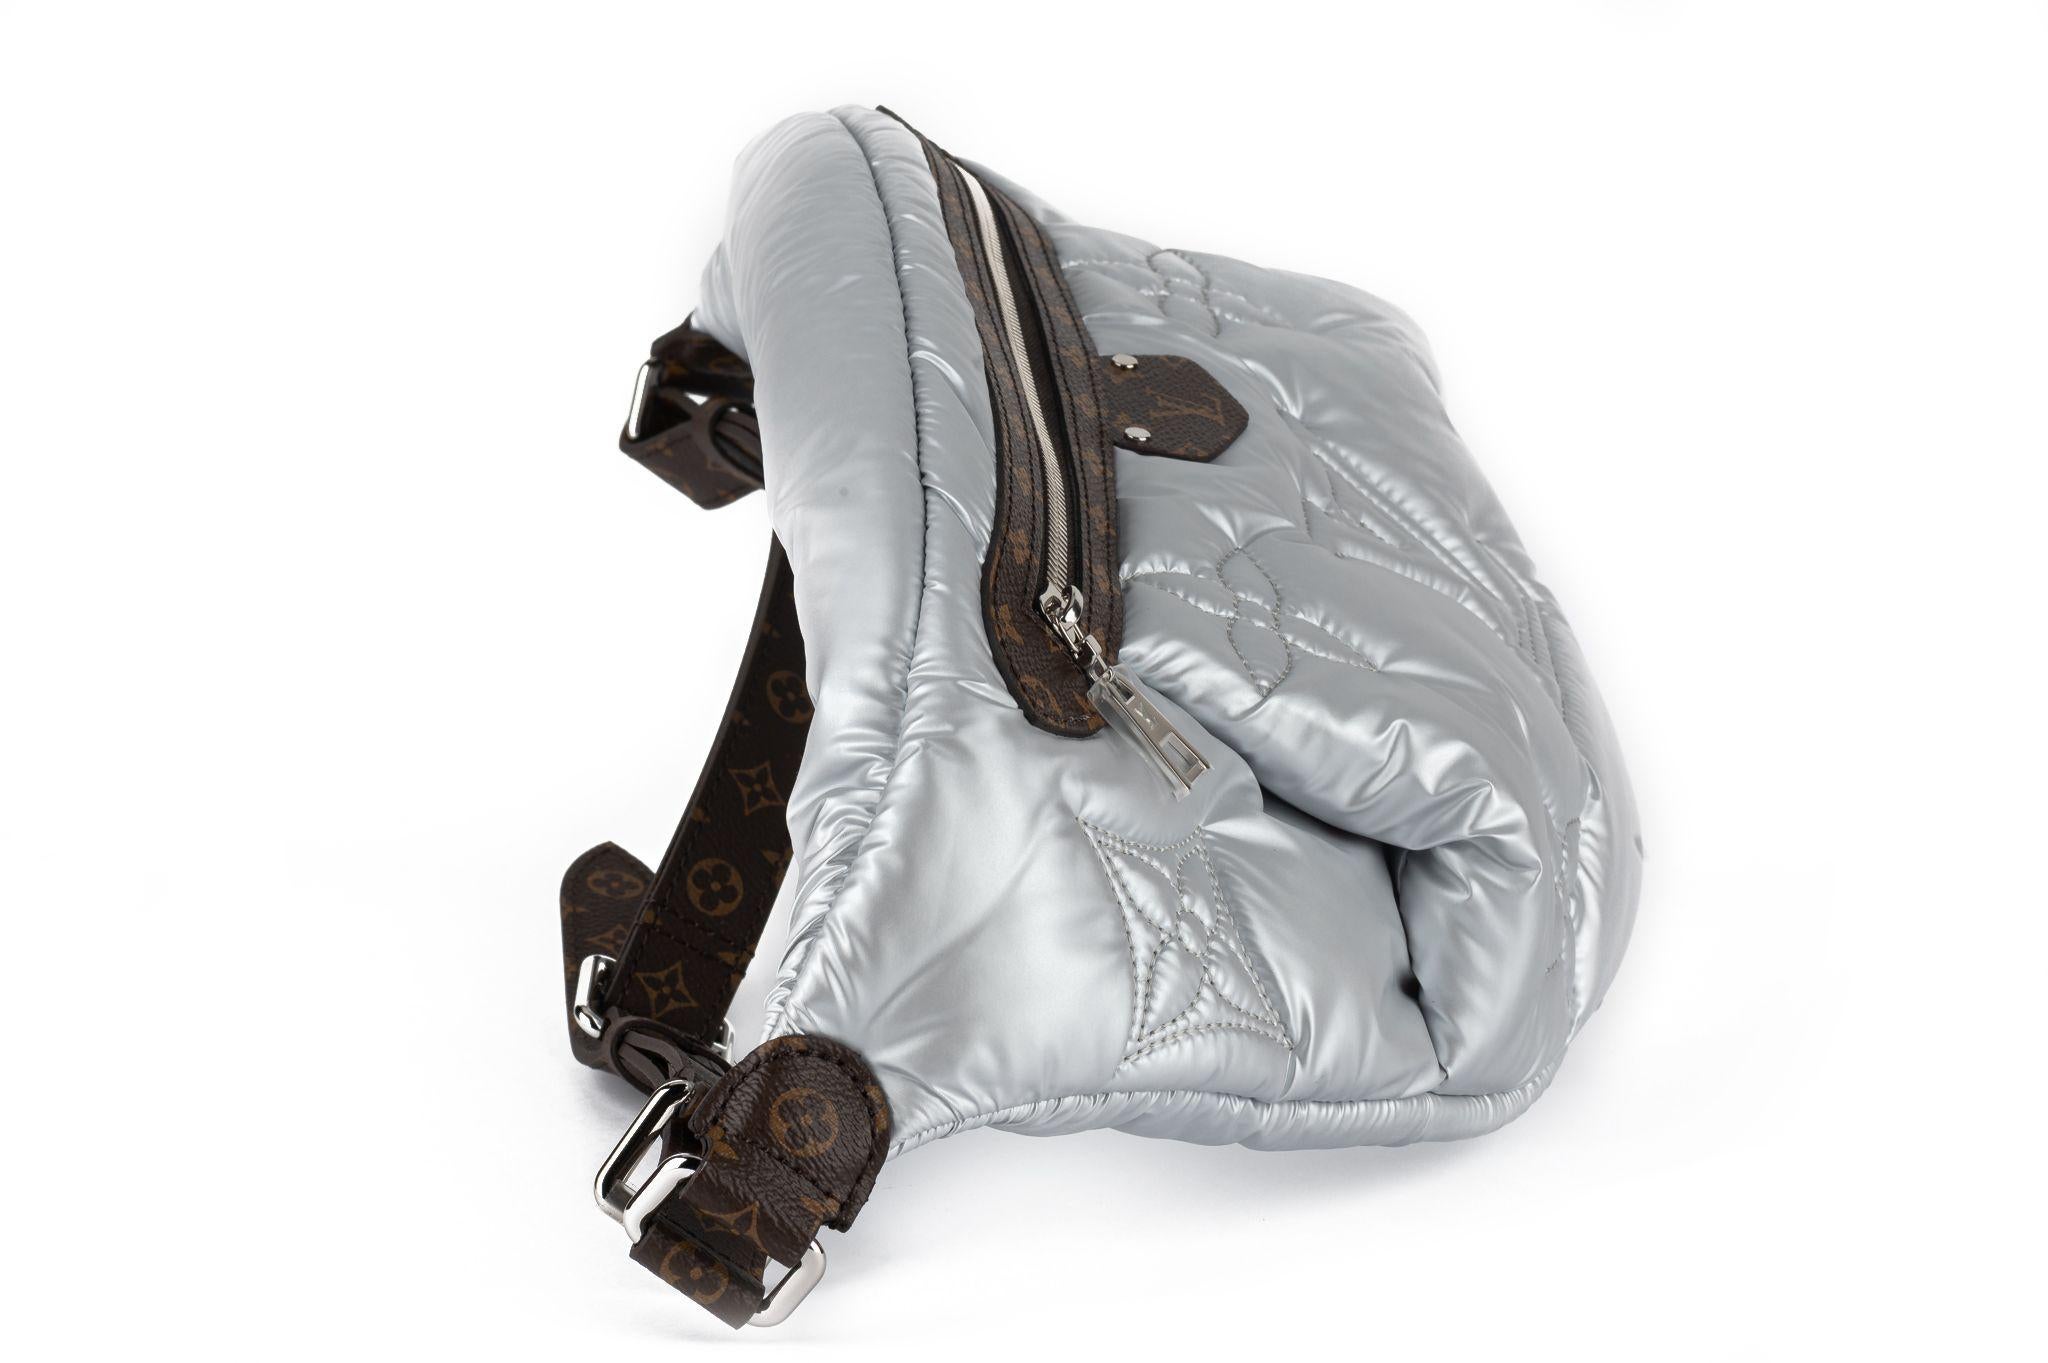 Louis Vuitton neue Collectible Pillow Bumbag aus silbernem recyceltem Öko-Nylon. Braunes Monogramm mit Details. Der Riemen ist abnehmbar und verstellbar. Gurtfall 9,8-19-8. Kommt mit originalem Schutzumschlag und Box.
